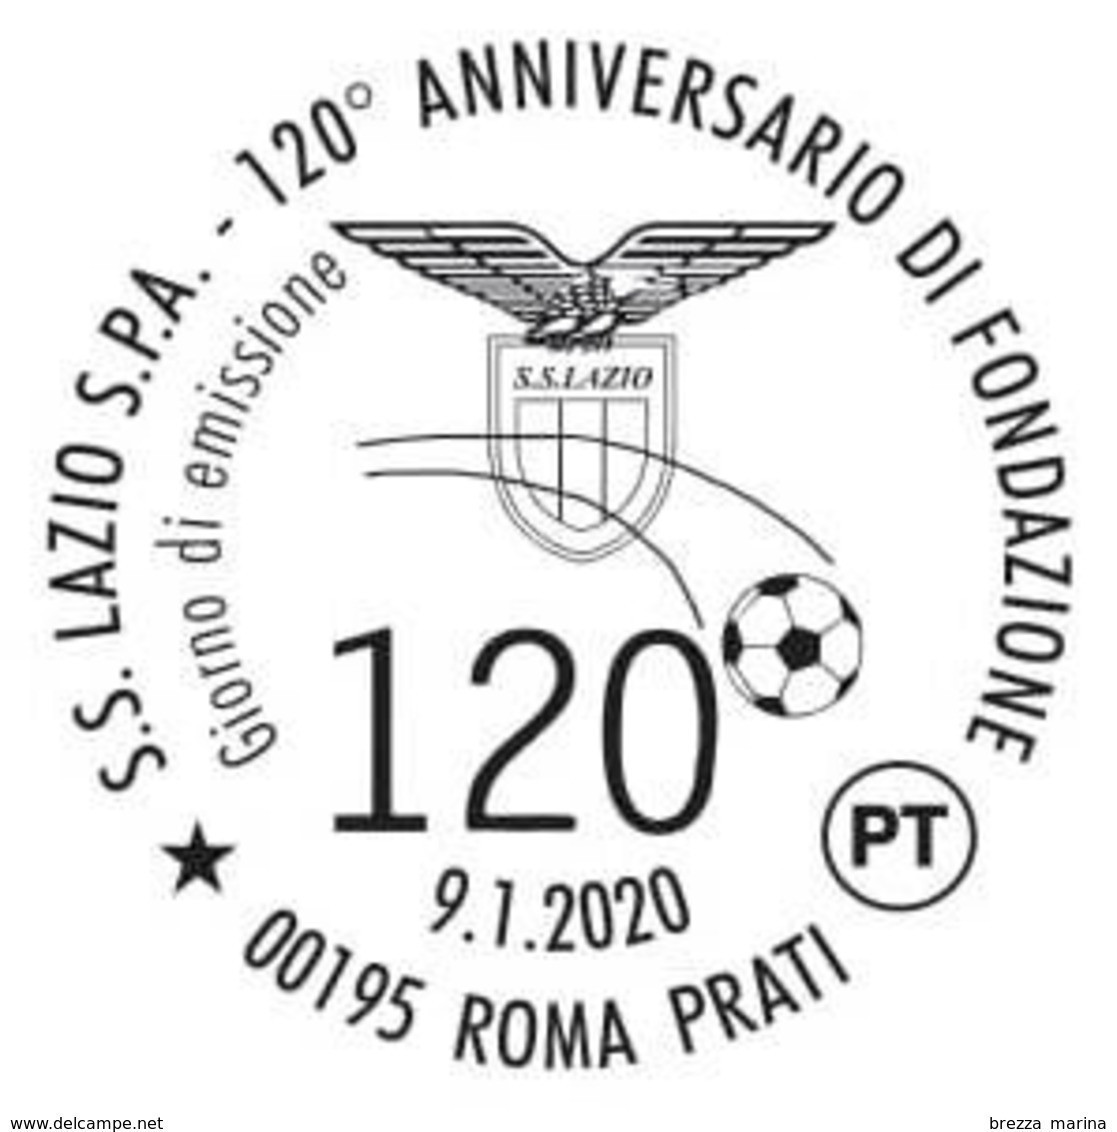 Nuovo - MNH - ITALIA - 2020 - 120 Anni Della S.S. Lazio S.p.A. – Calcio – Pallone - B - 2011-20: Mint/hinged